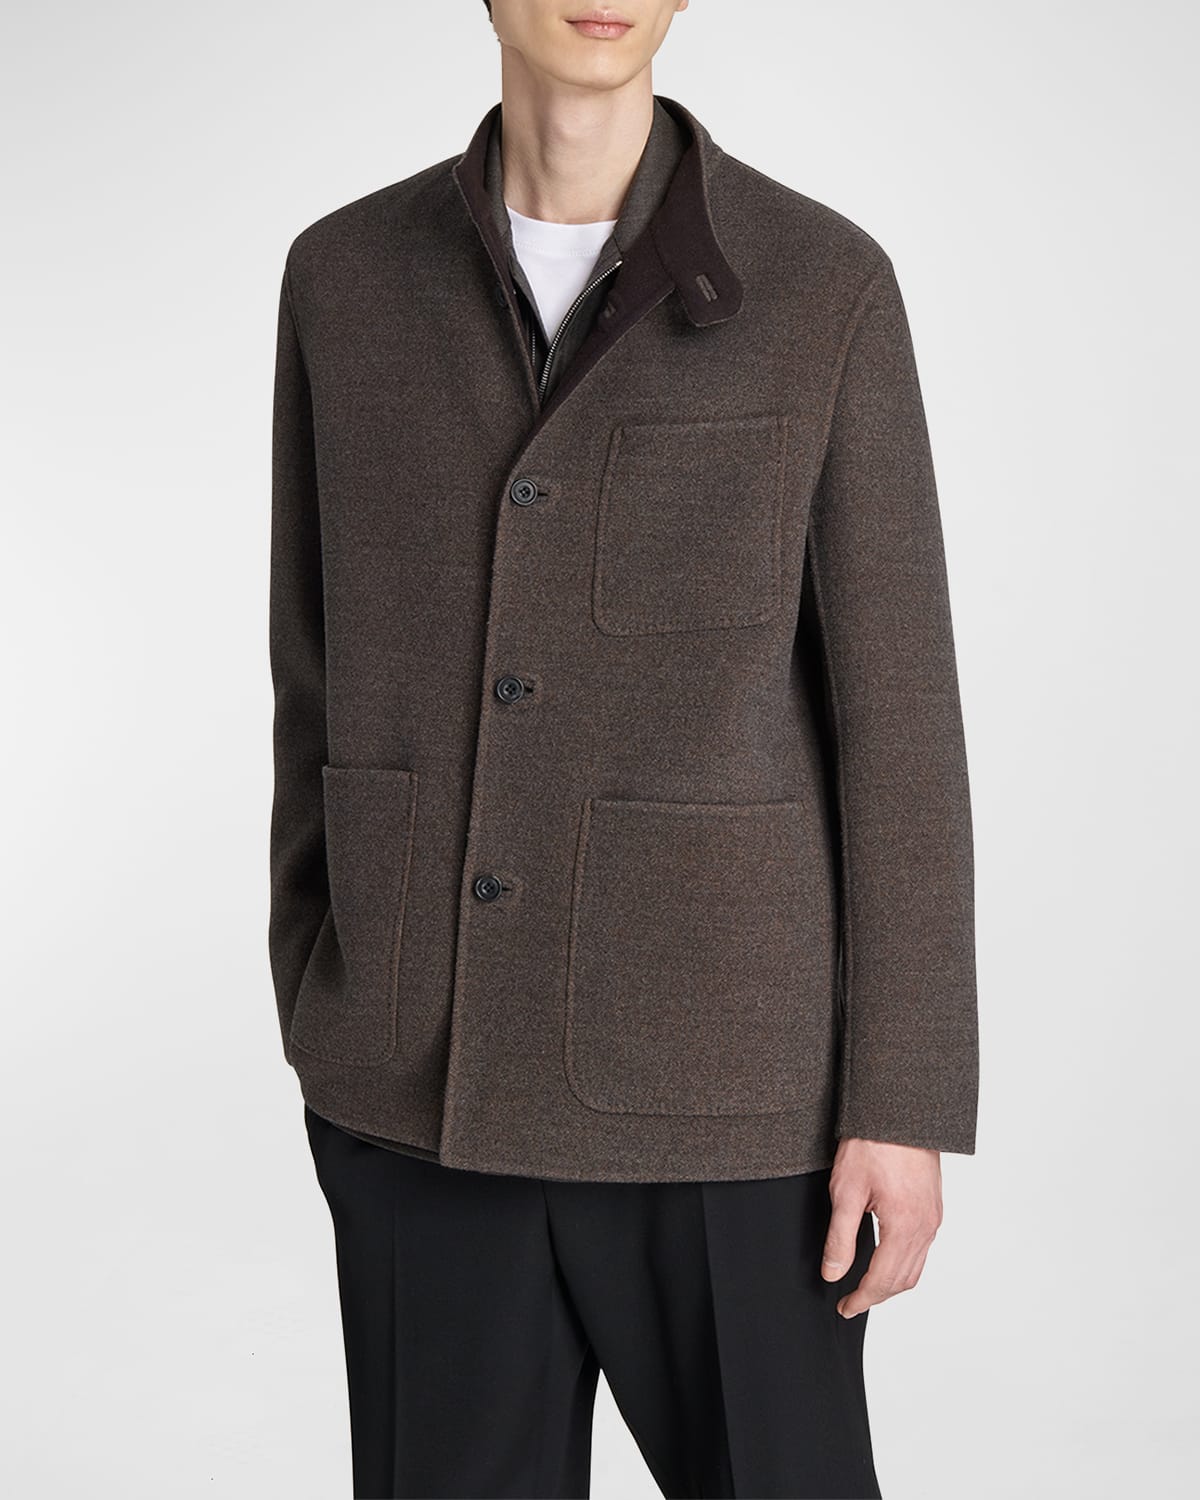 Berluti Men's Virgin Wool Chore Jacket In Nuance Of Brown